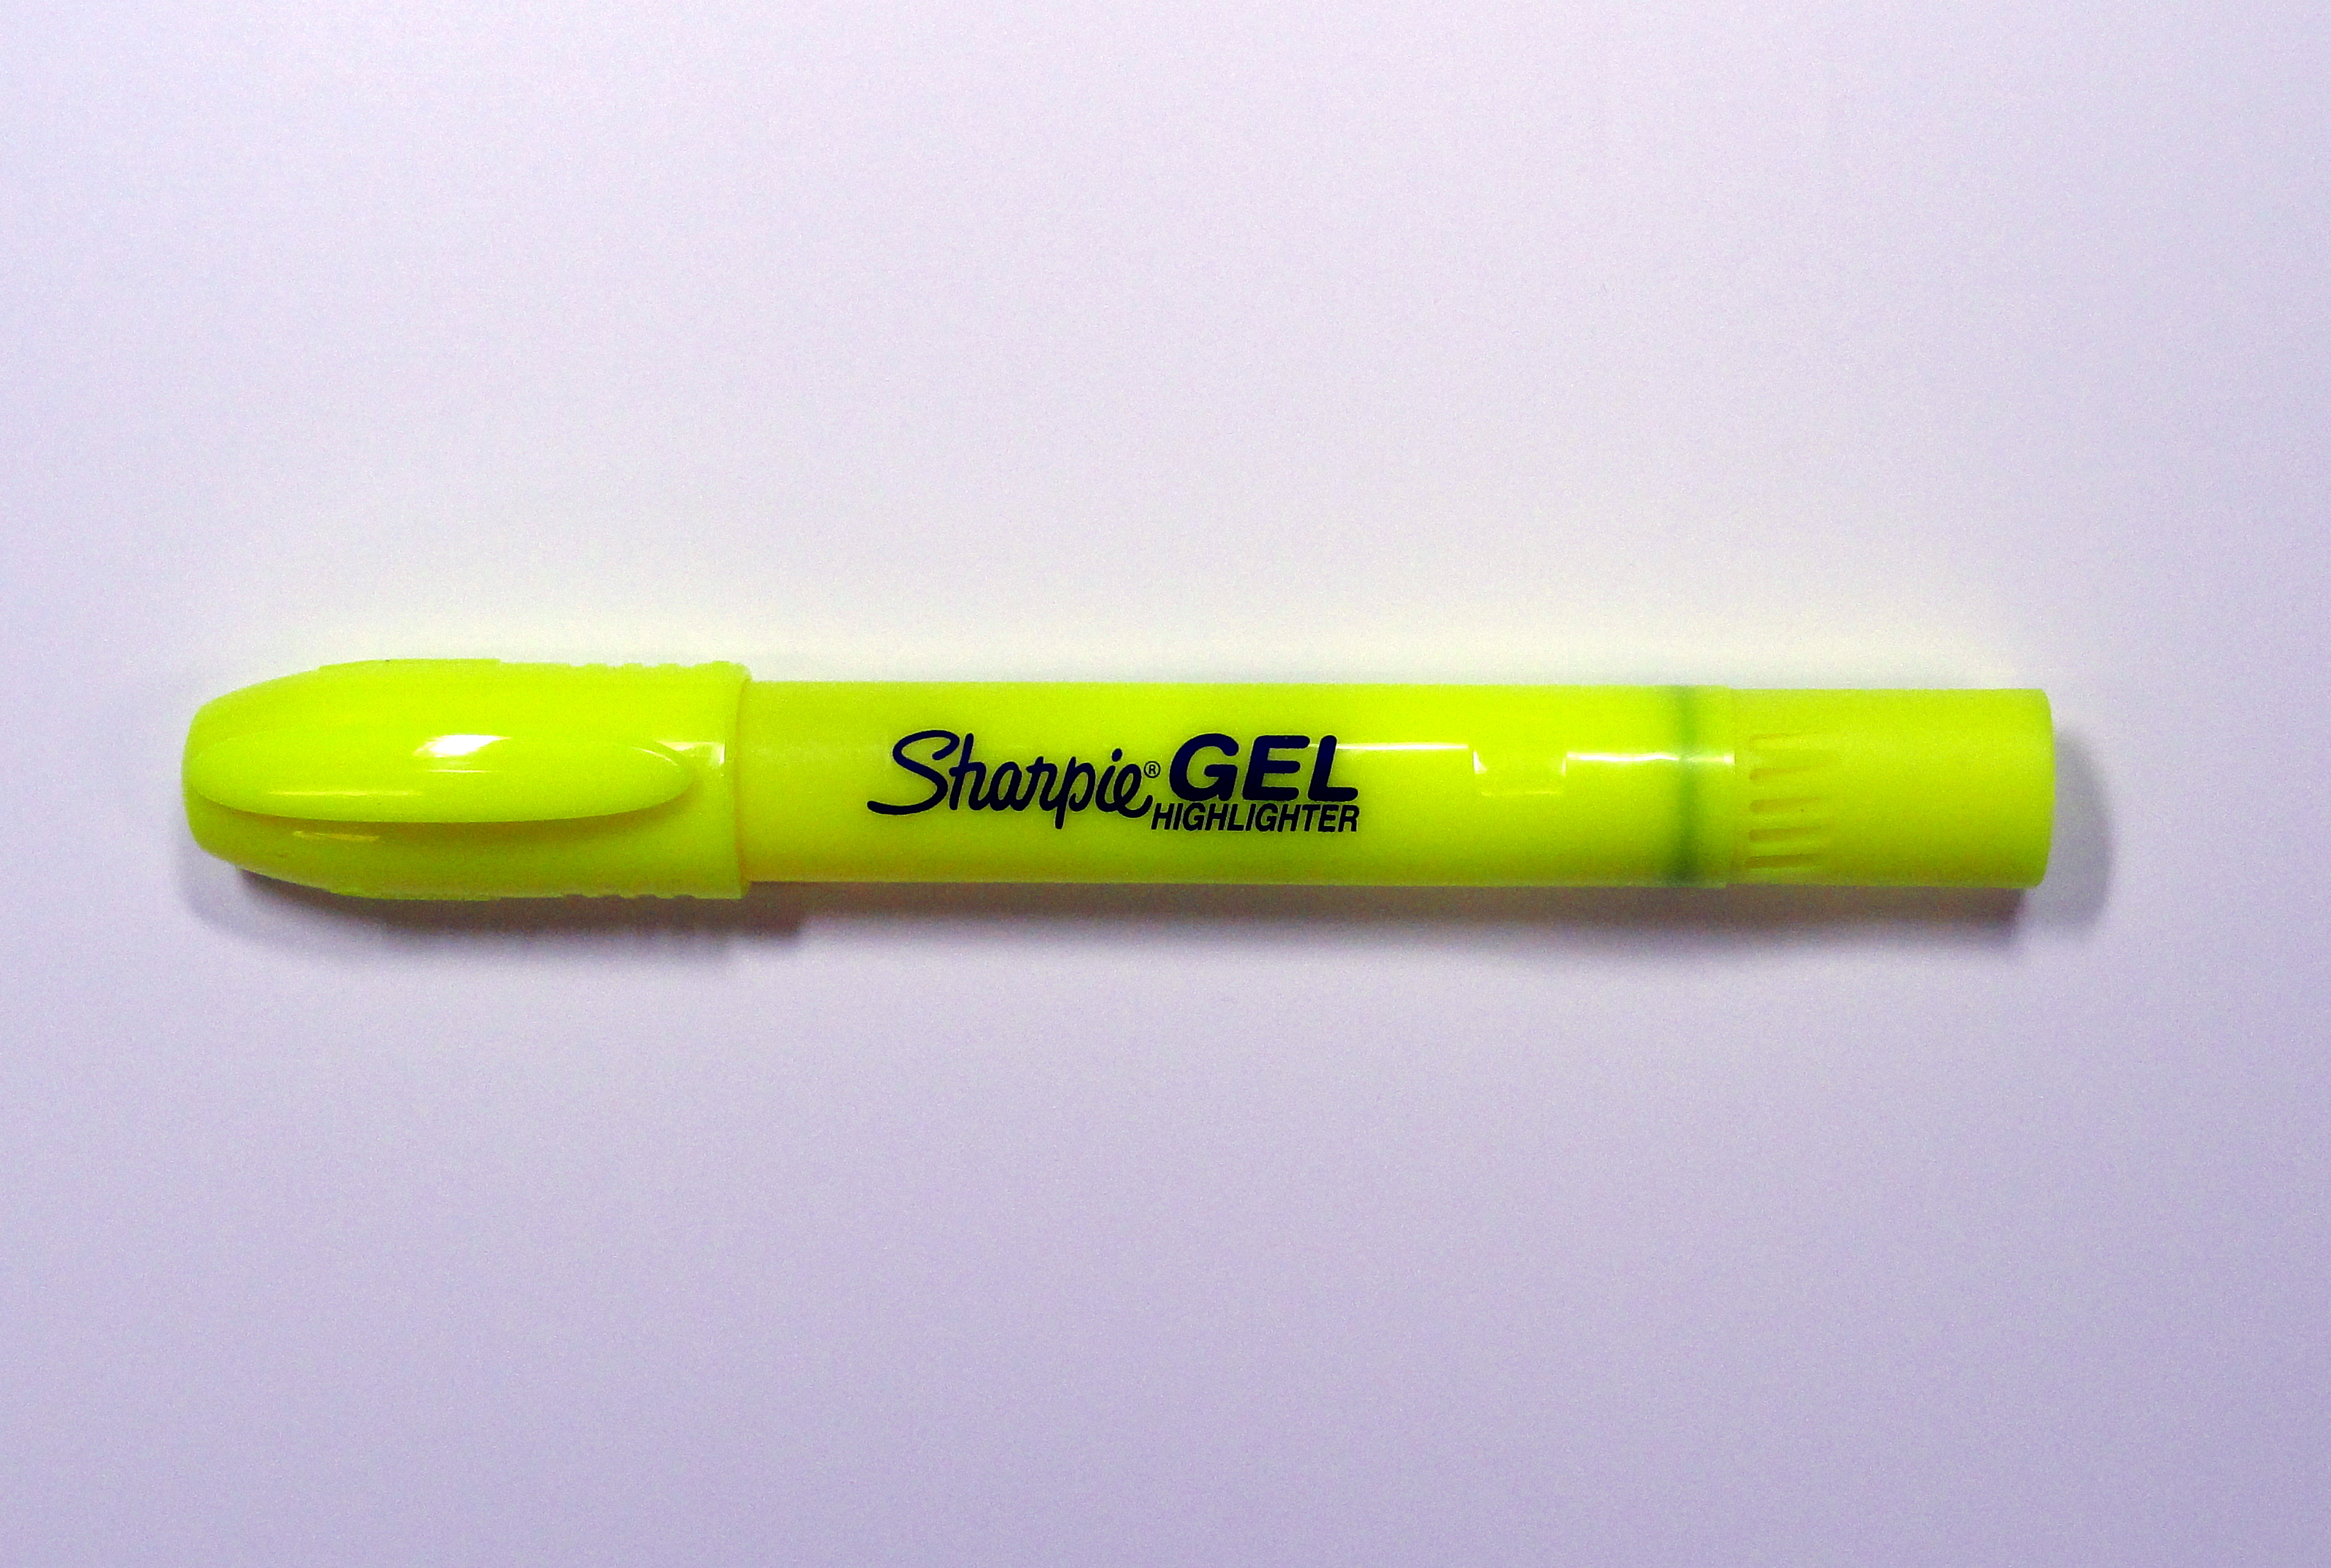 Pentel Slicci Fine Point Gel Pens - Colour with Claire